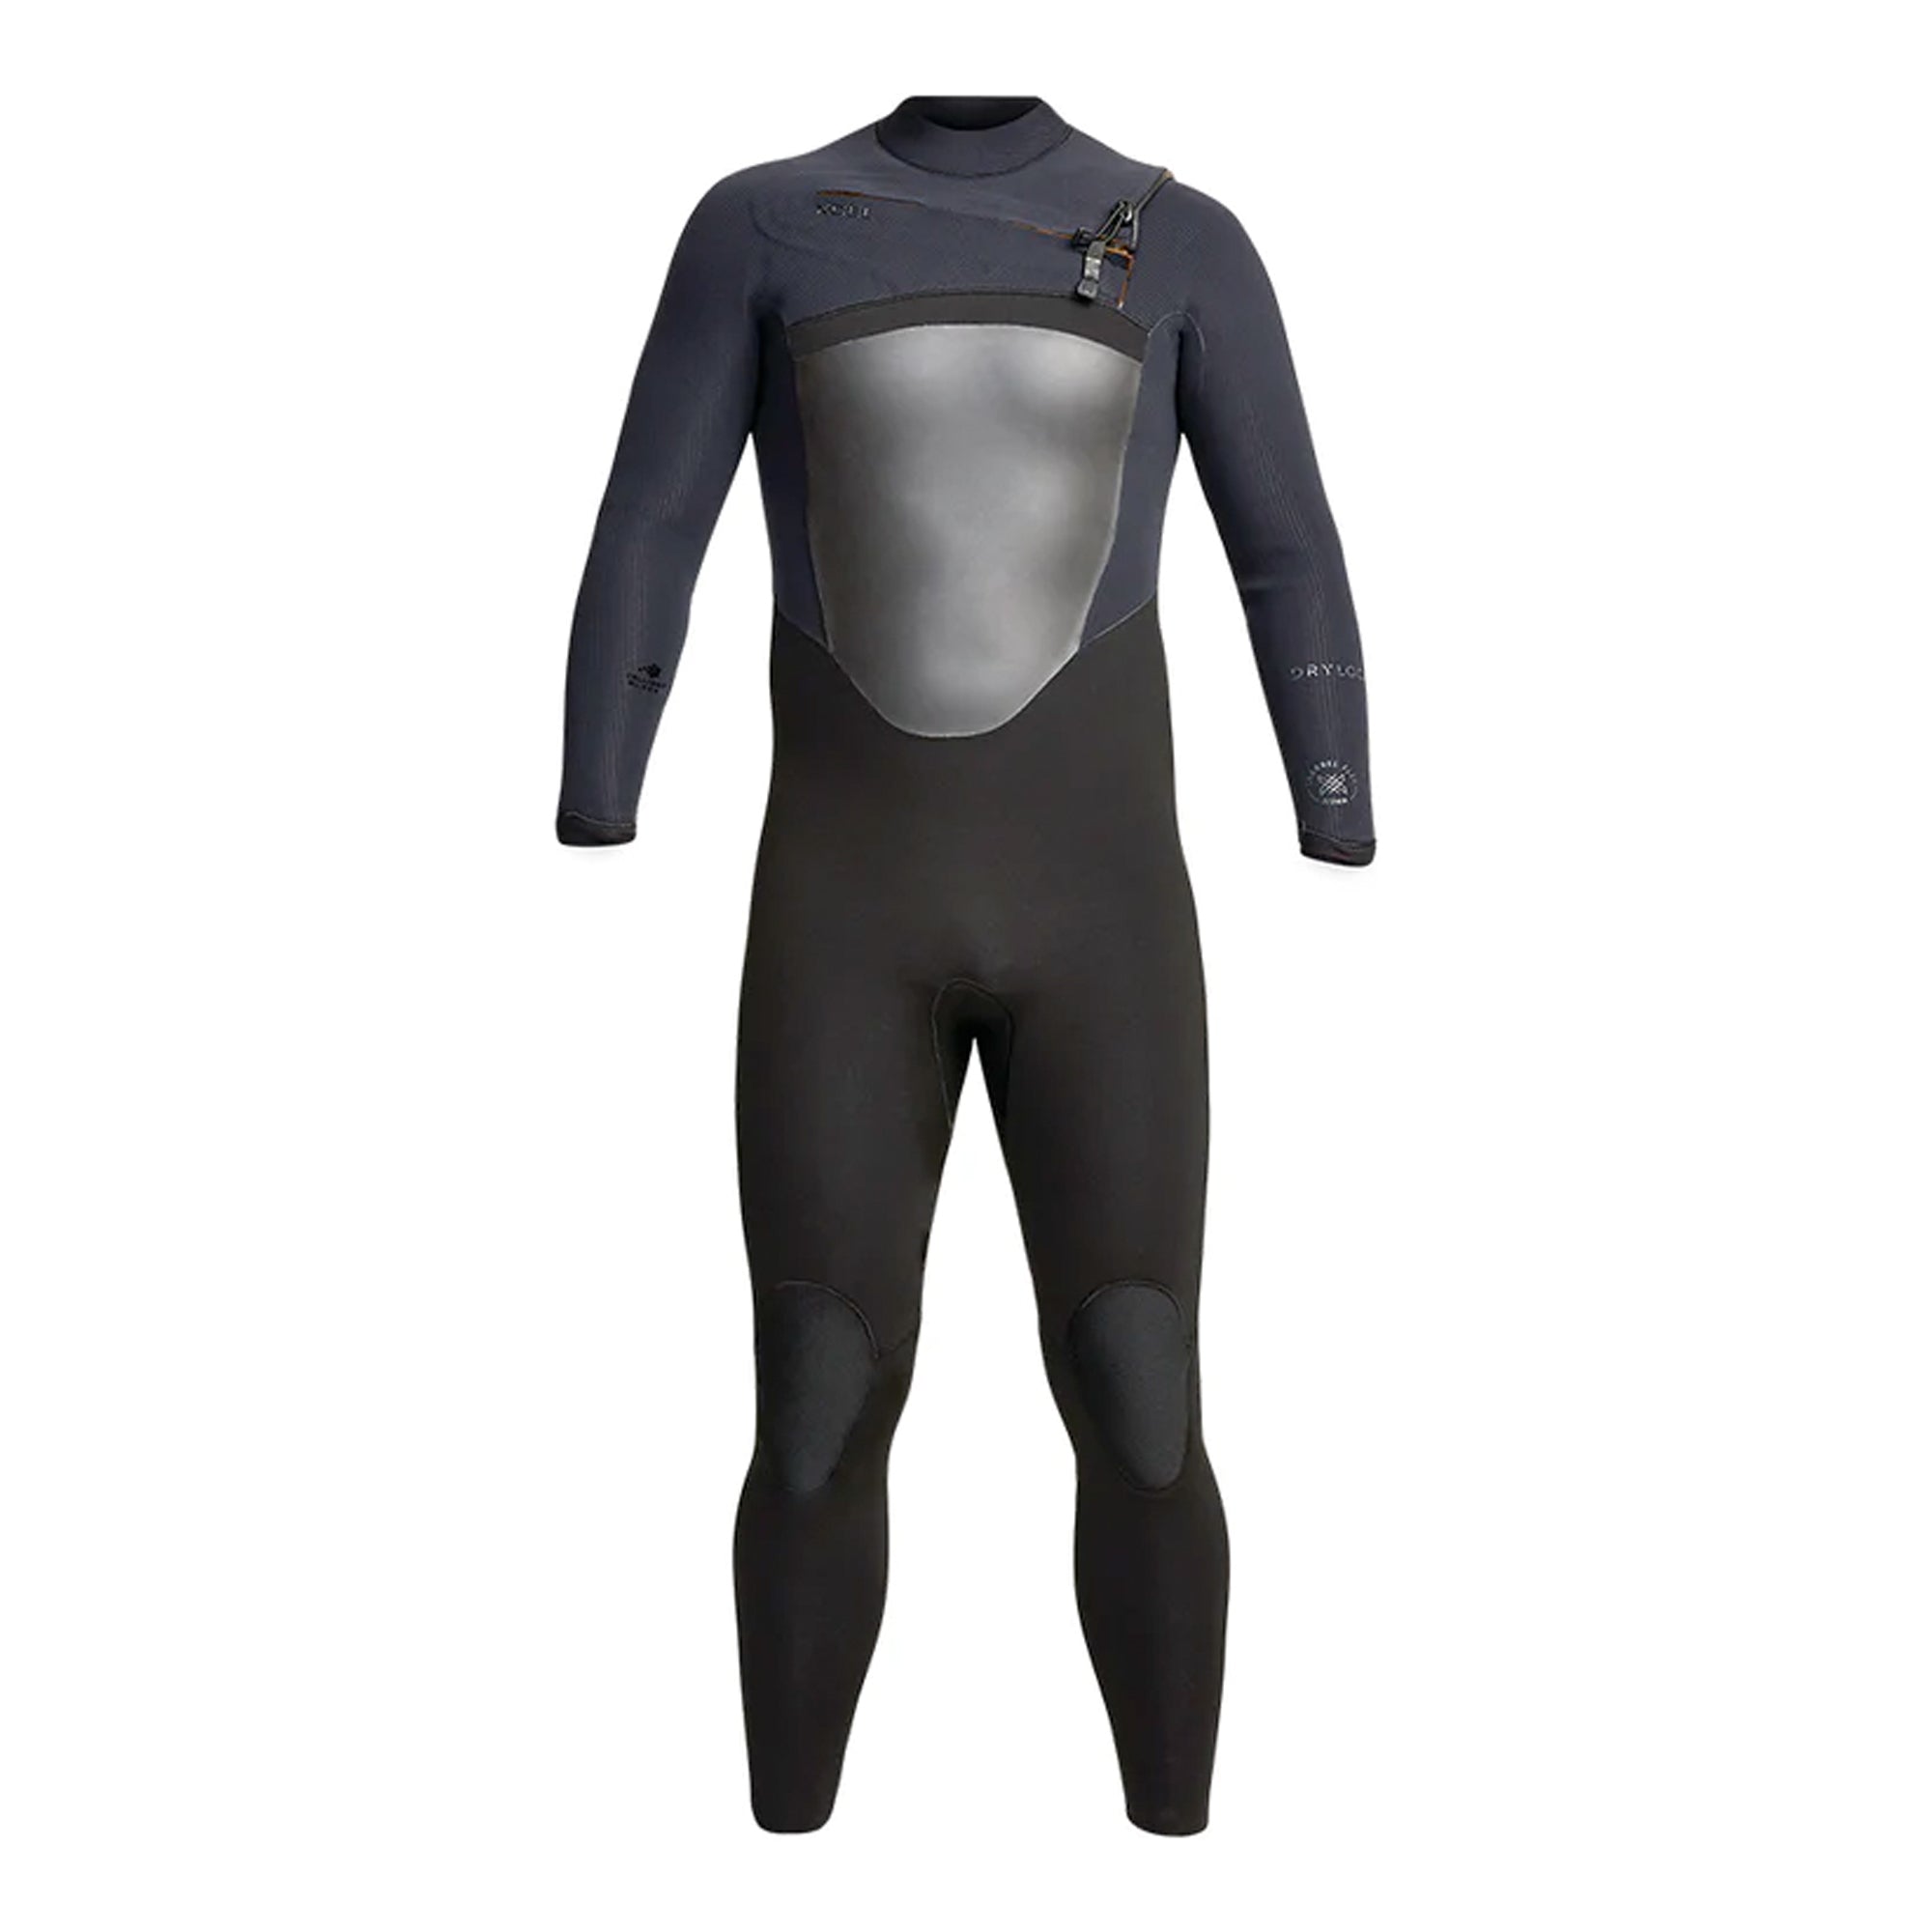 Xcel Drylock 3/2 Chest-Zip Men's Fullsuit Wetsuit